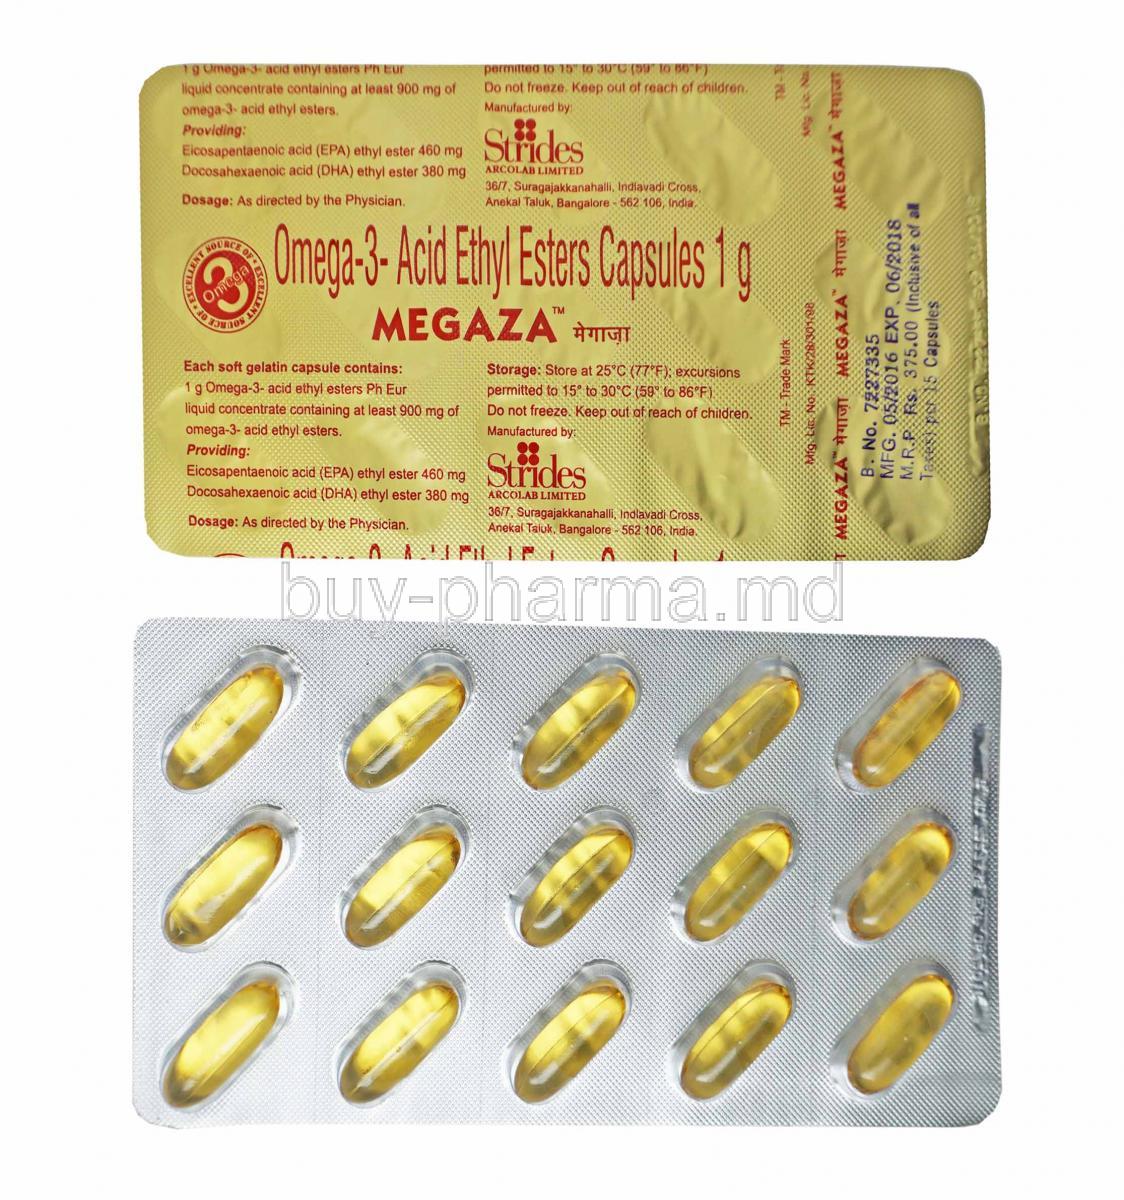 Megaza, Eicosapentaenoic acid and Docosahexaenoic acid capsules